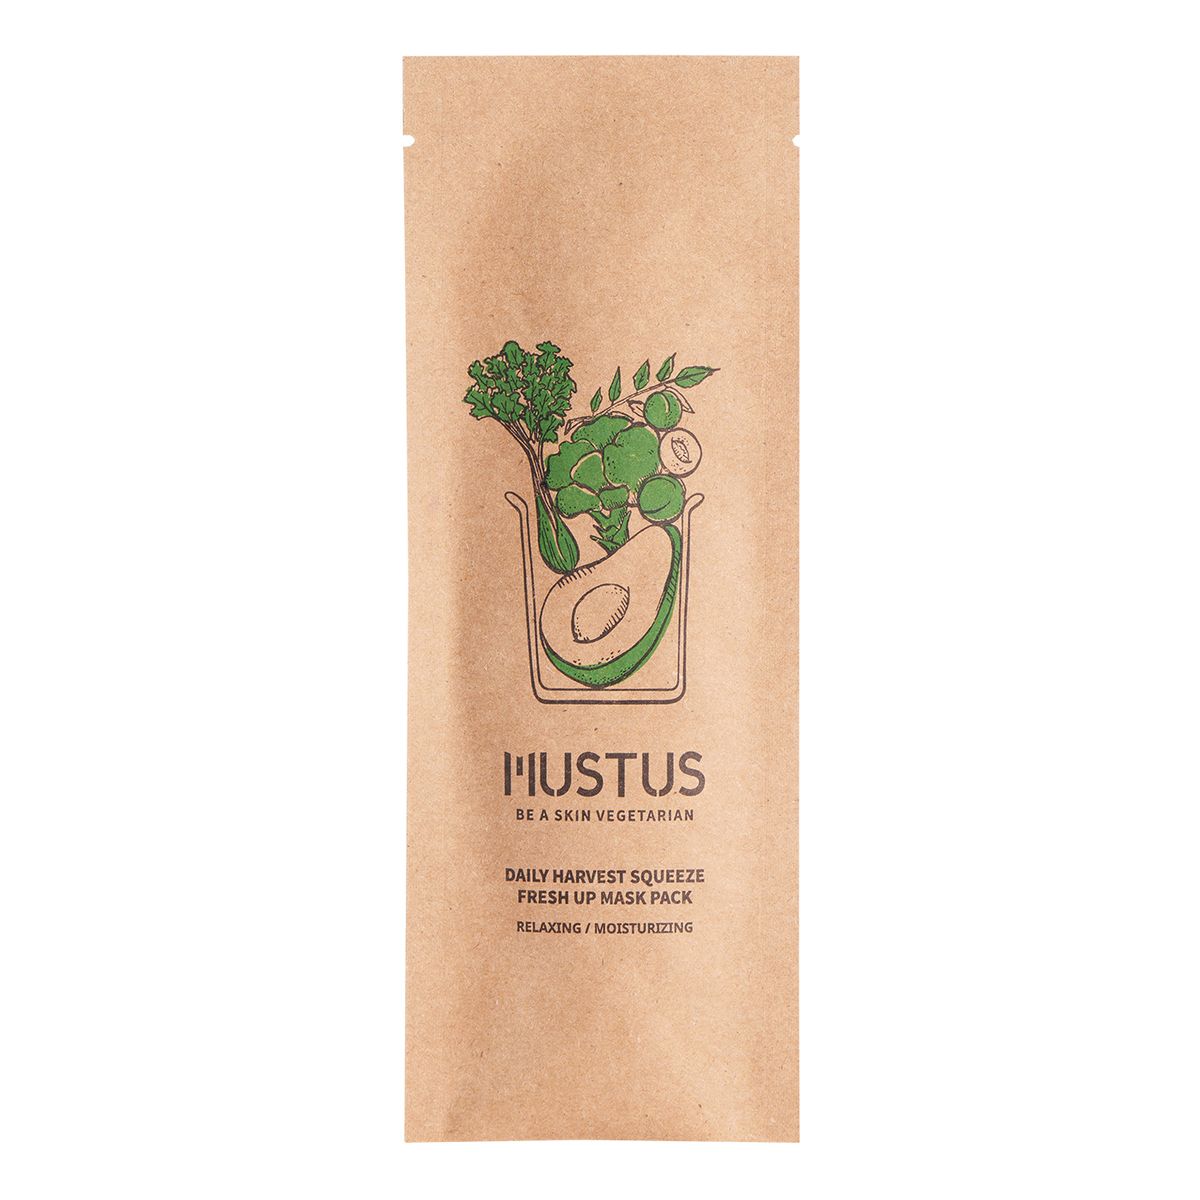 Mustus BE A SKIN VEGETARIAN! Daily Harvest Squeeze Fresh Up Maseczka w płachcie kojąco nawilżająca, stworzona na bazie kompleksu ekstraktów z zielonych warzyw i owoców 20g